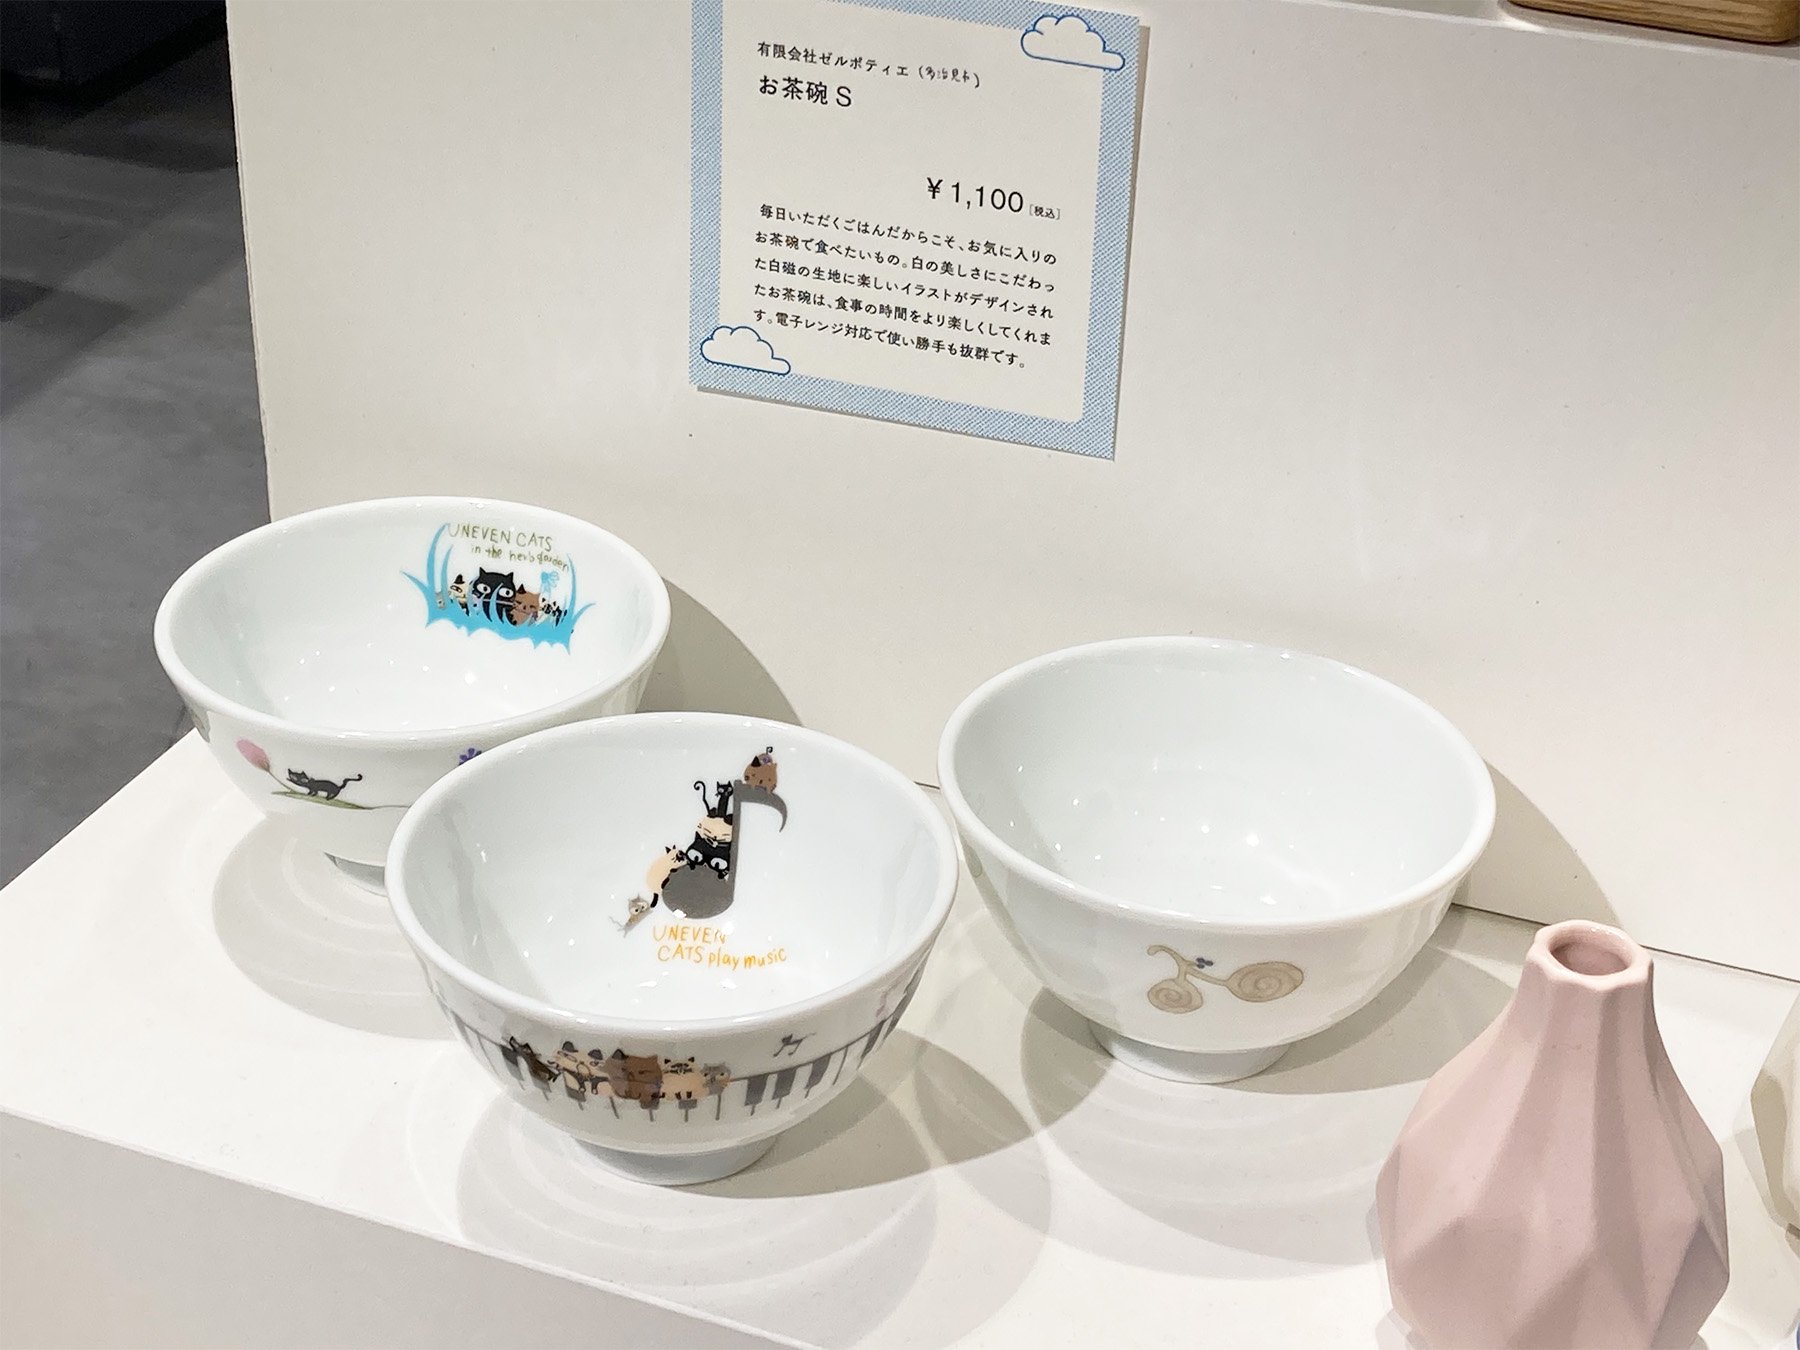 シンジカトウデザインの猫のイラストの茶碗